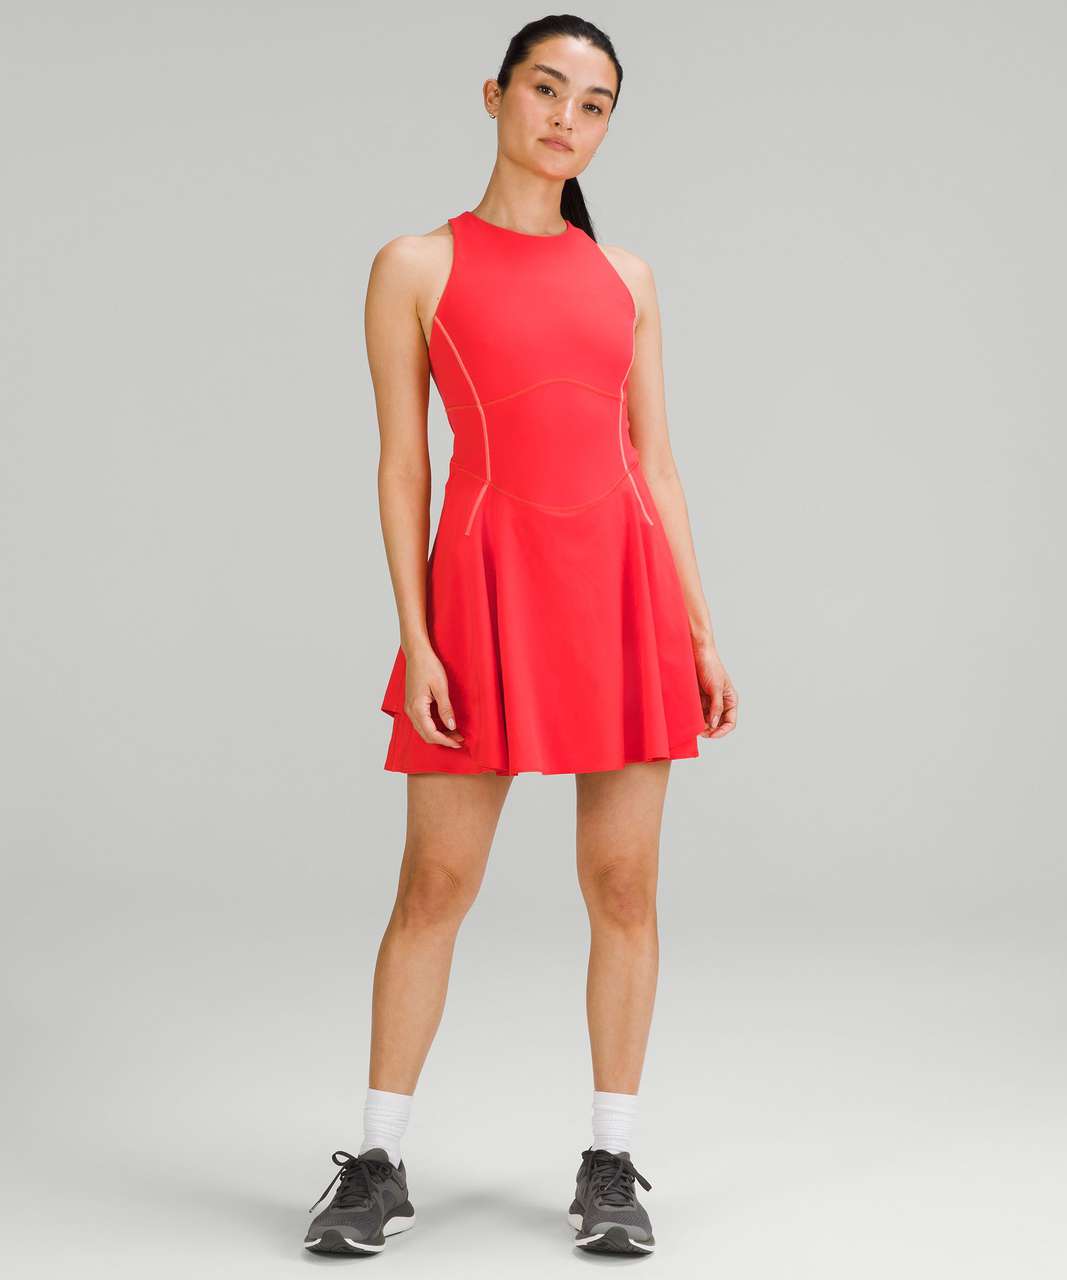 red tennis dress